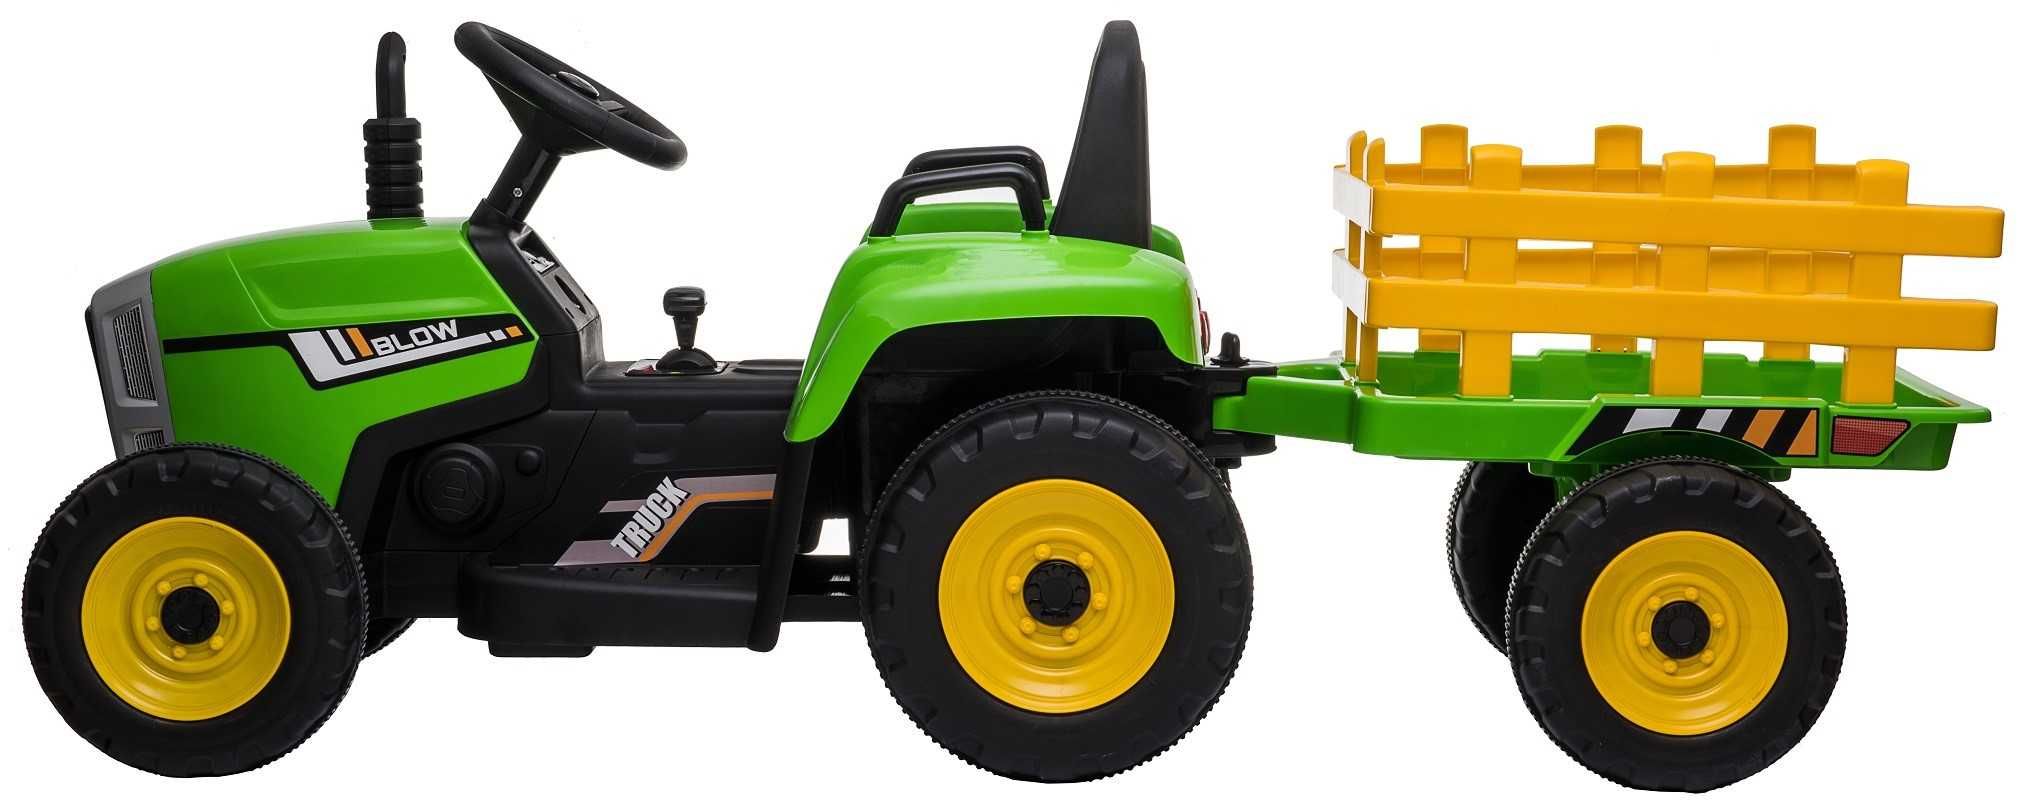 Tractoras electric cu remorca copii 2-6 ani Blow 60W, Roti Moi Verde